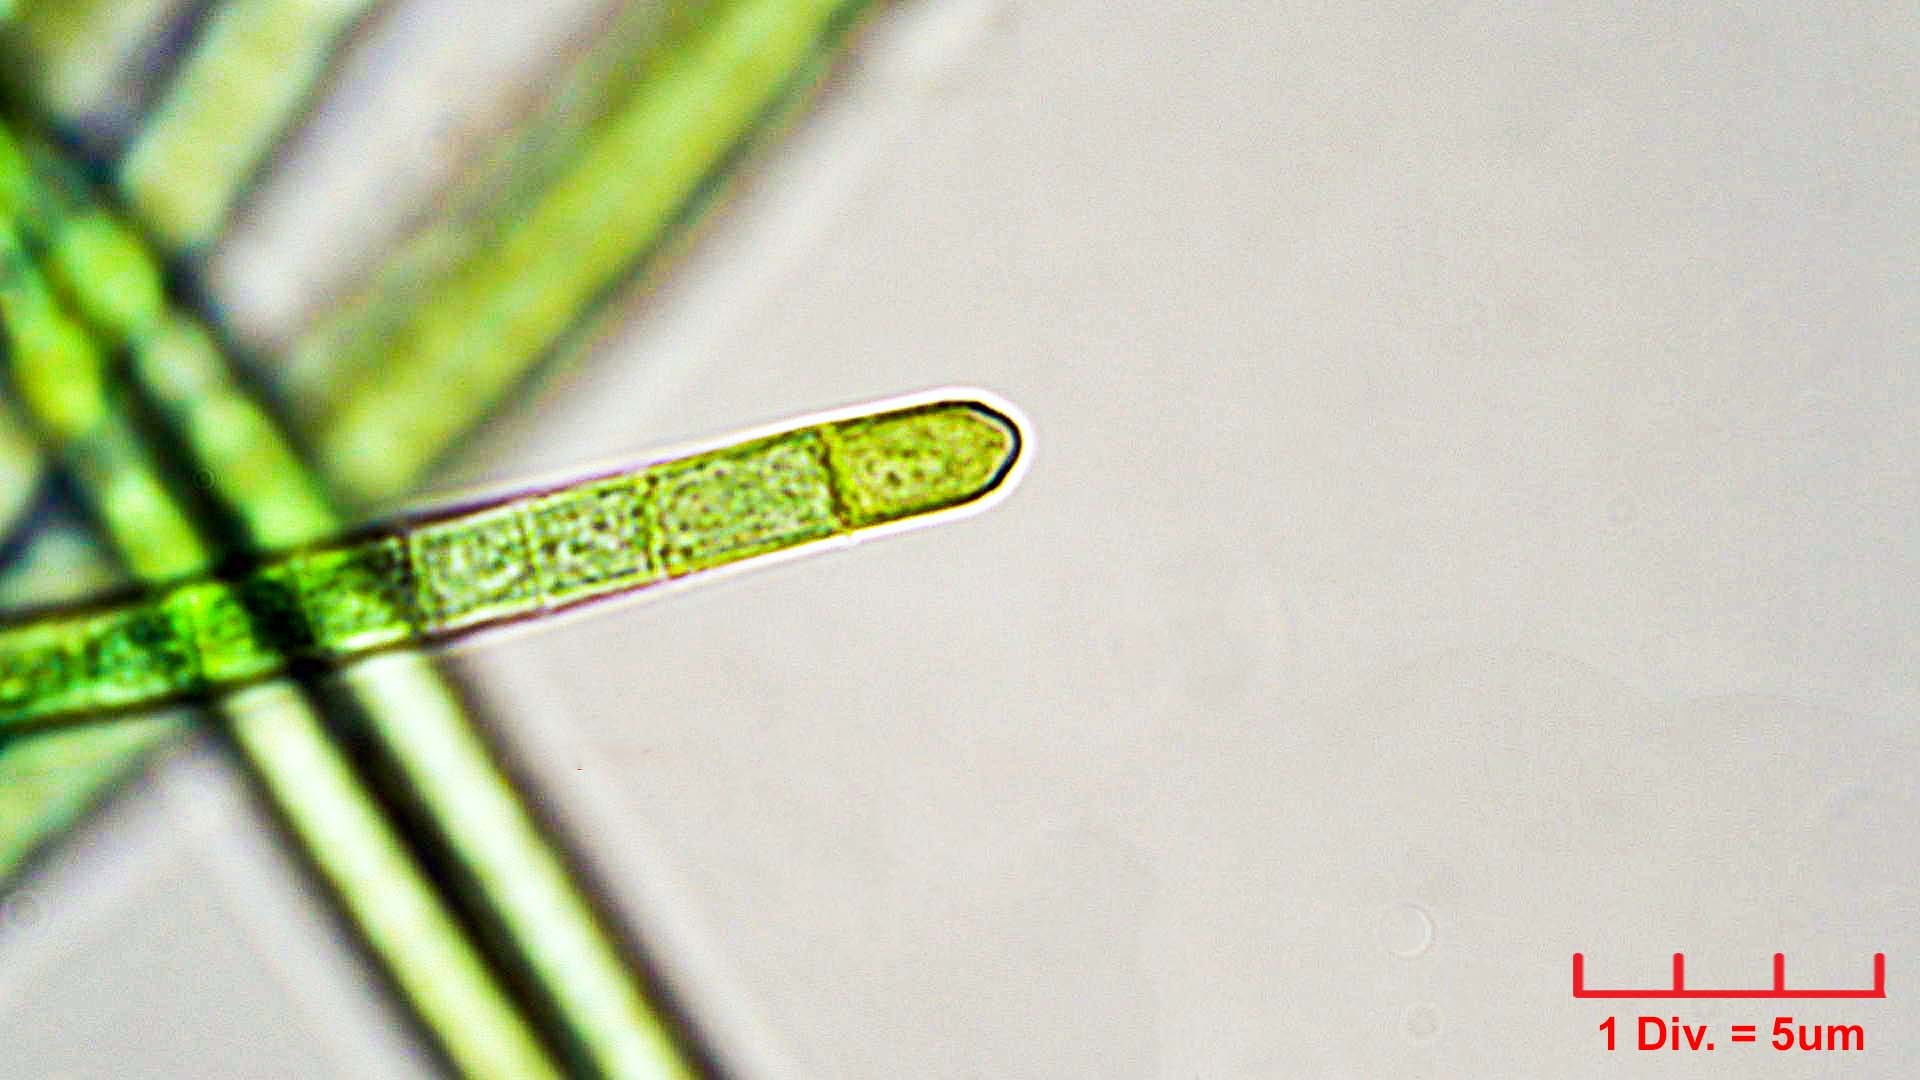 Cyanobacteria/Oscillatoriales/Oscillatoriaceae/Phormidium/retzii/phormidium-retzii-233.jpg